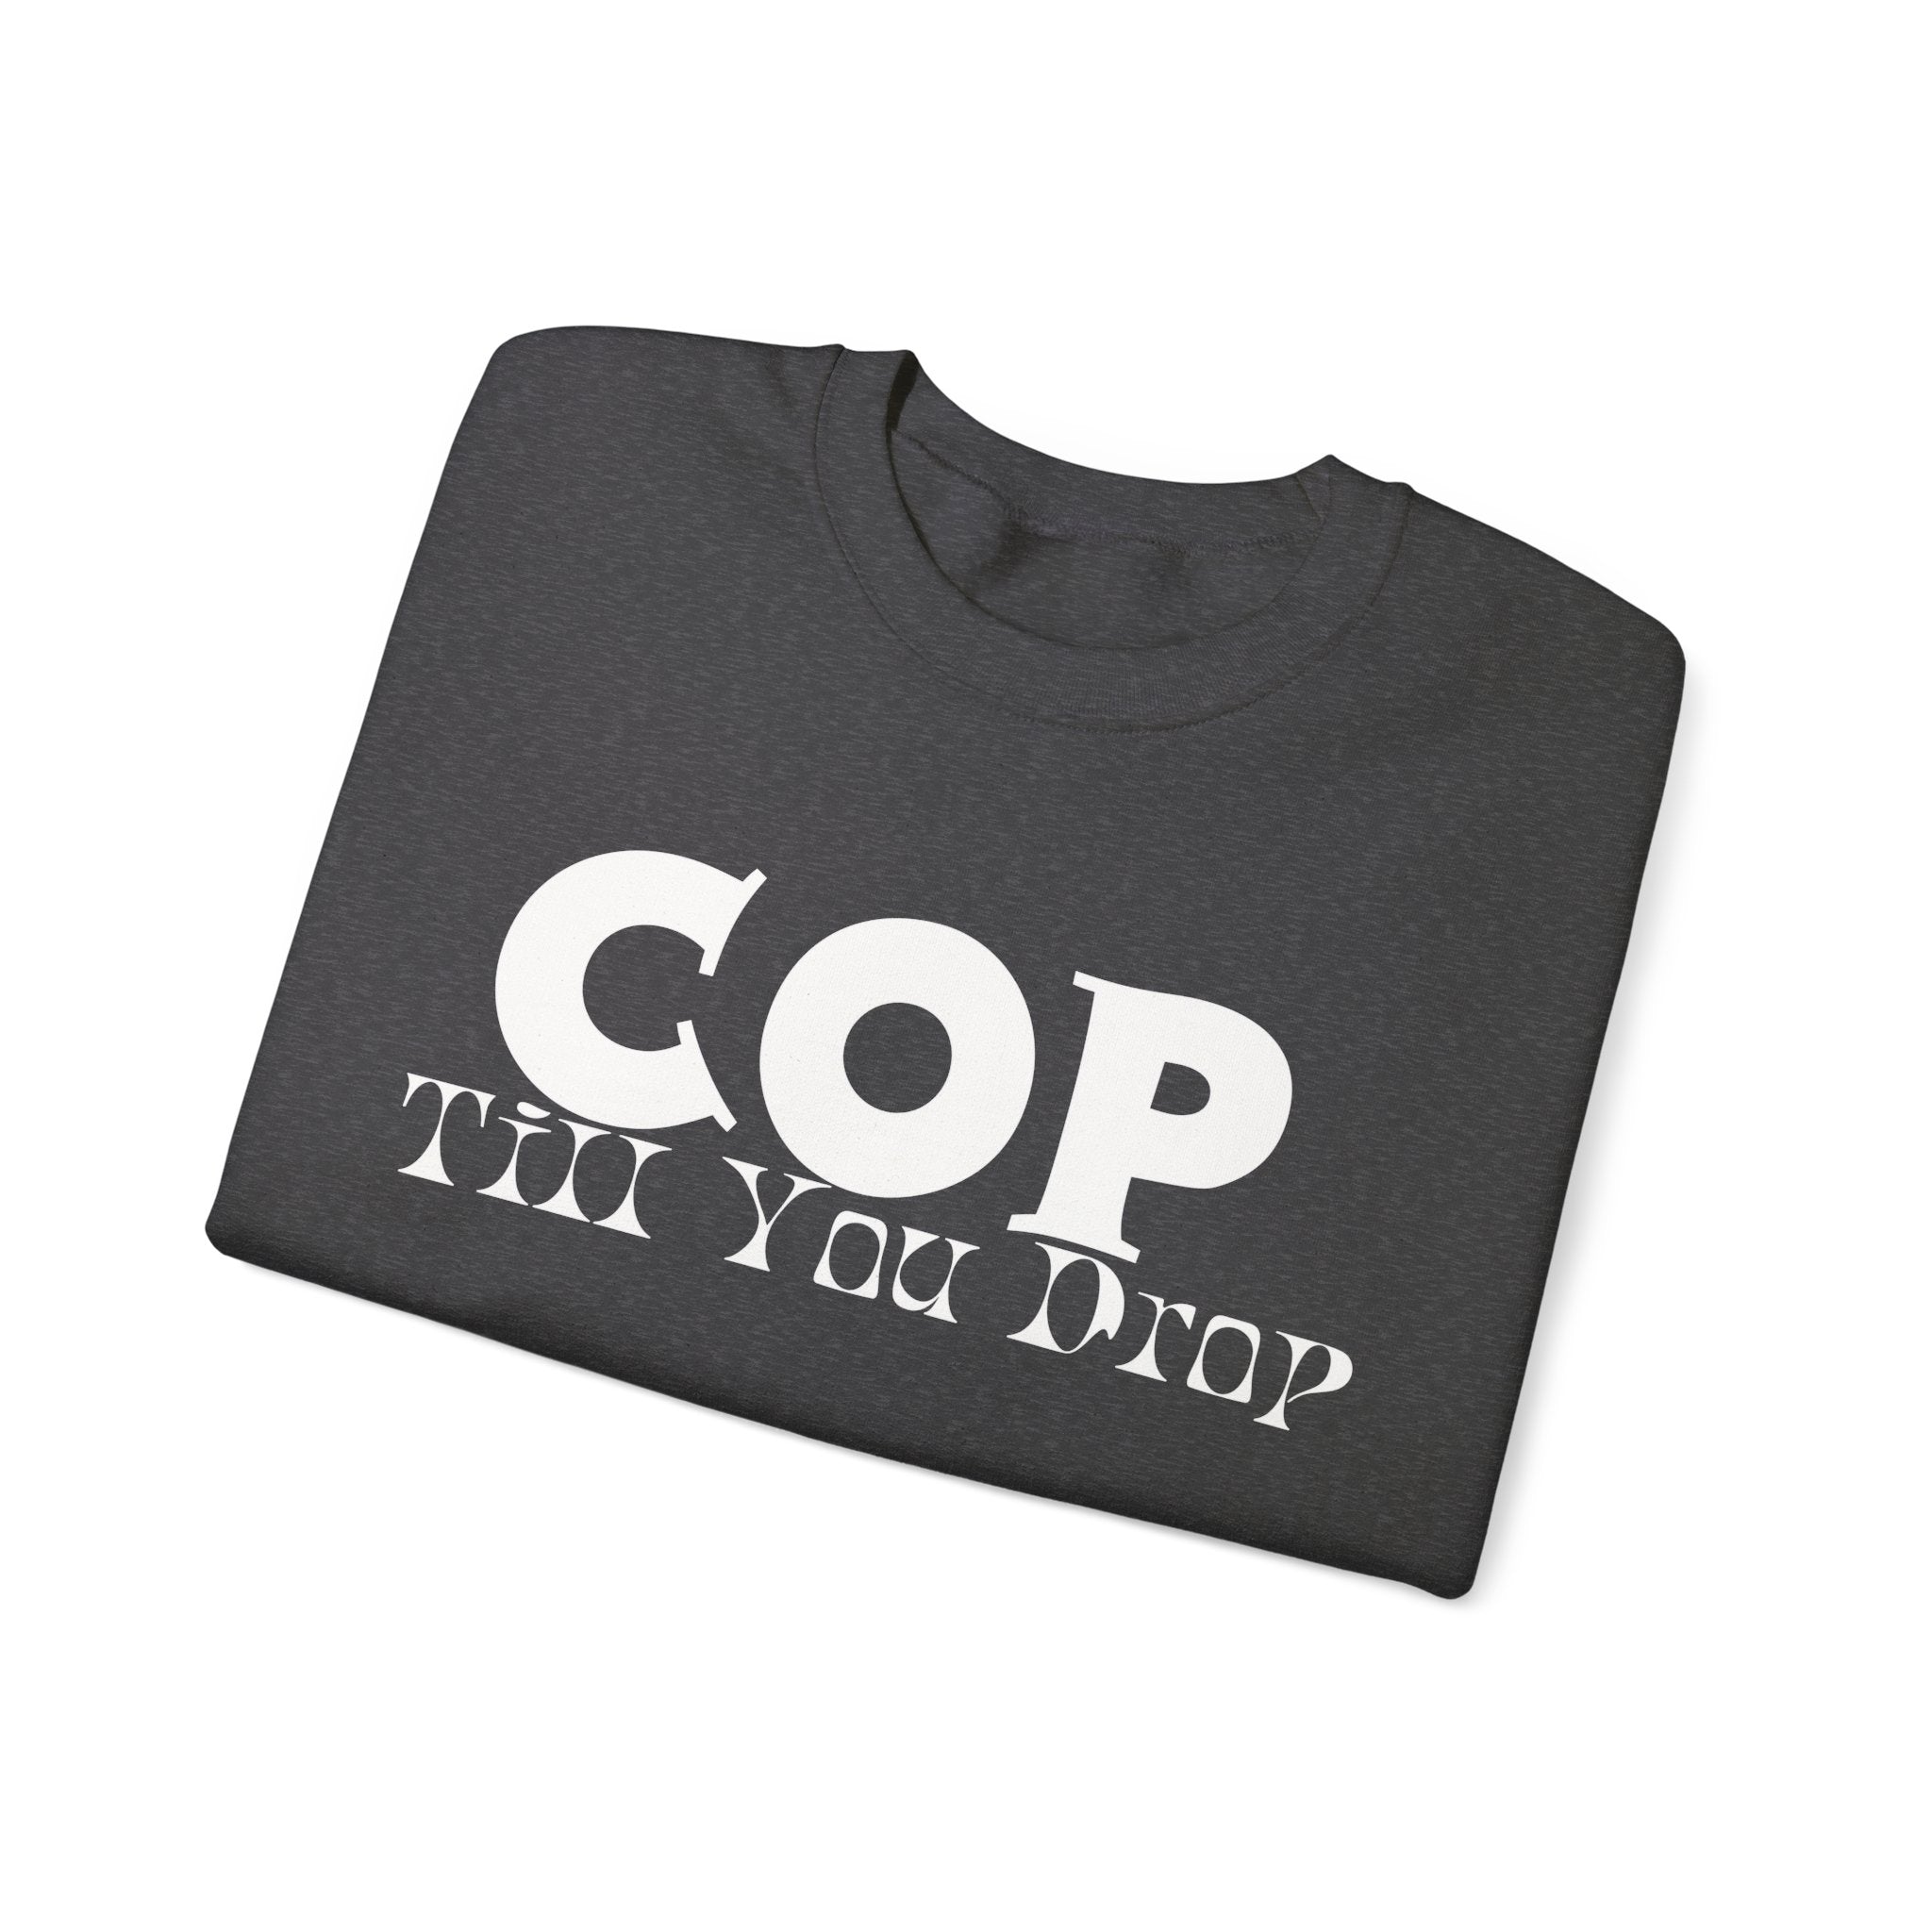 Cop Till You Drop